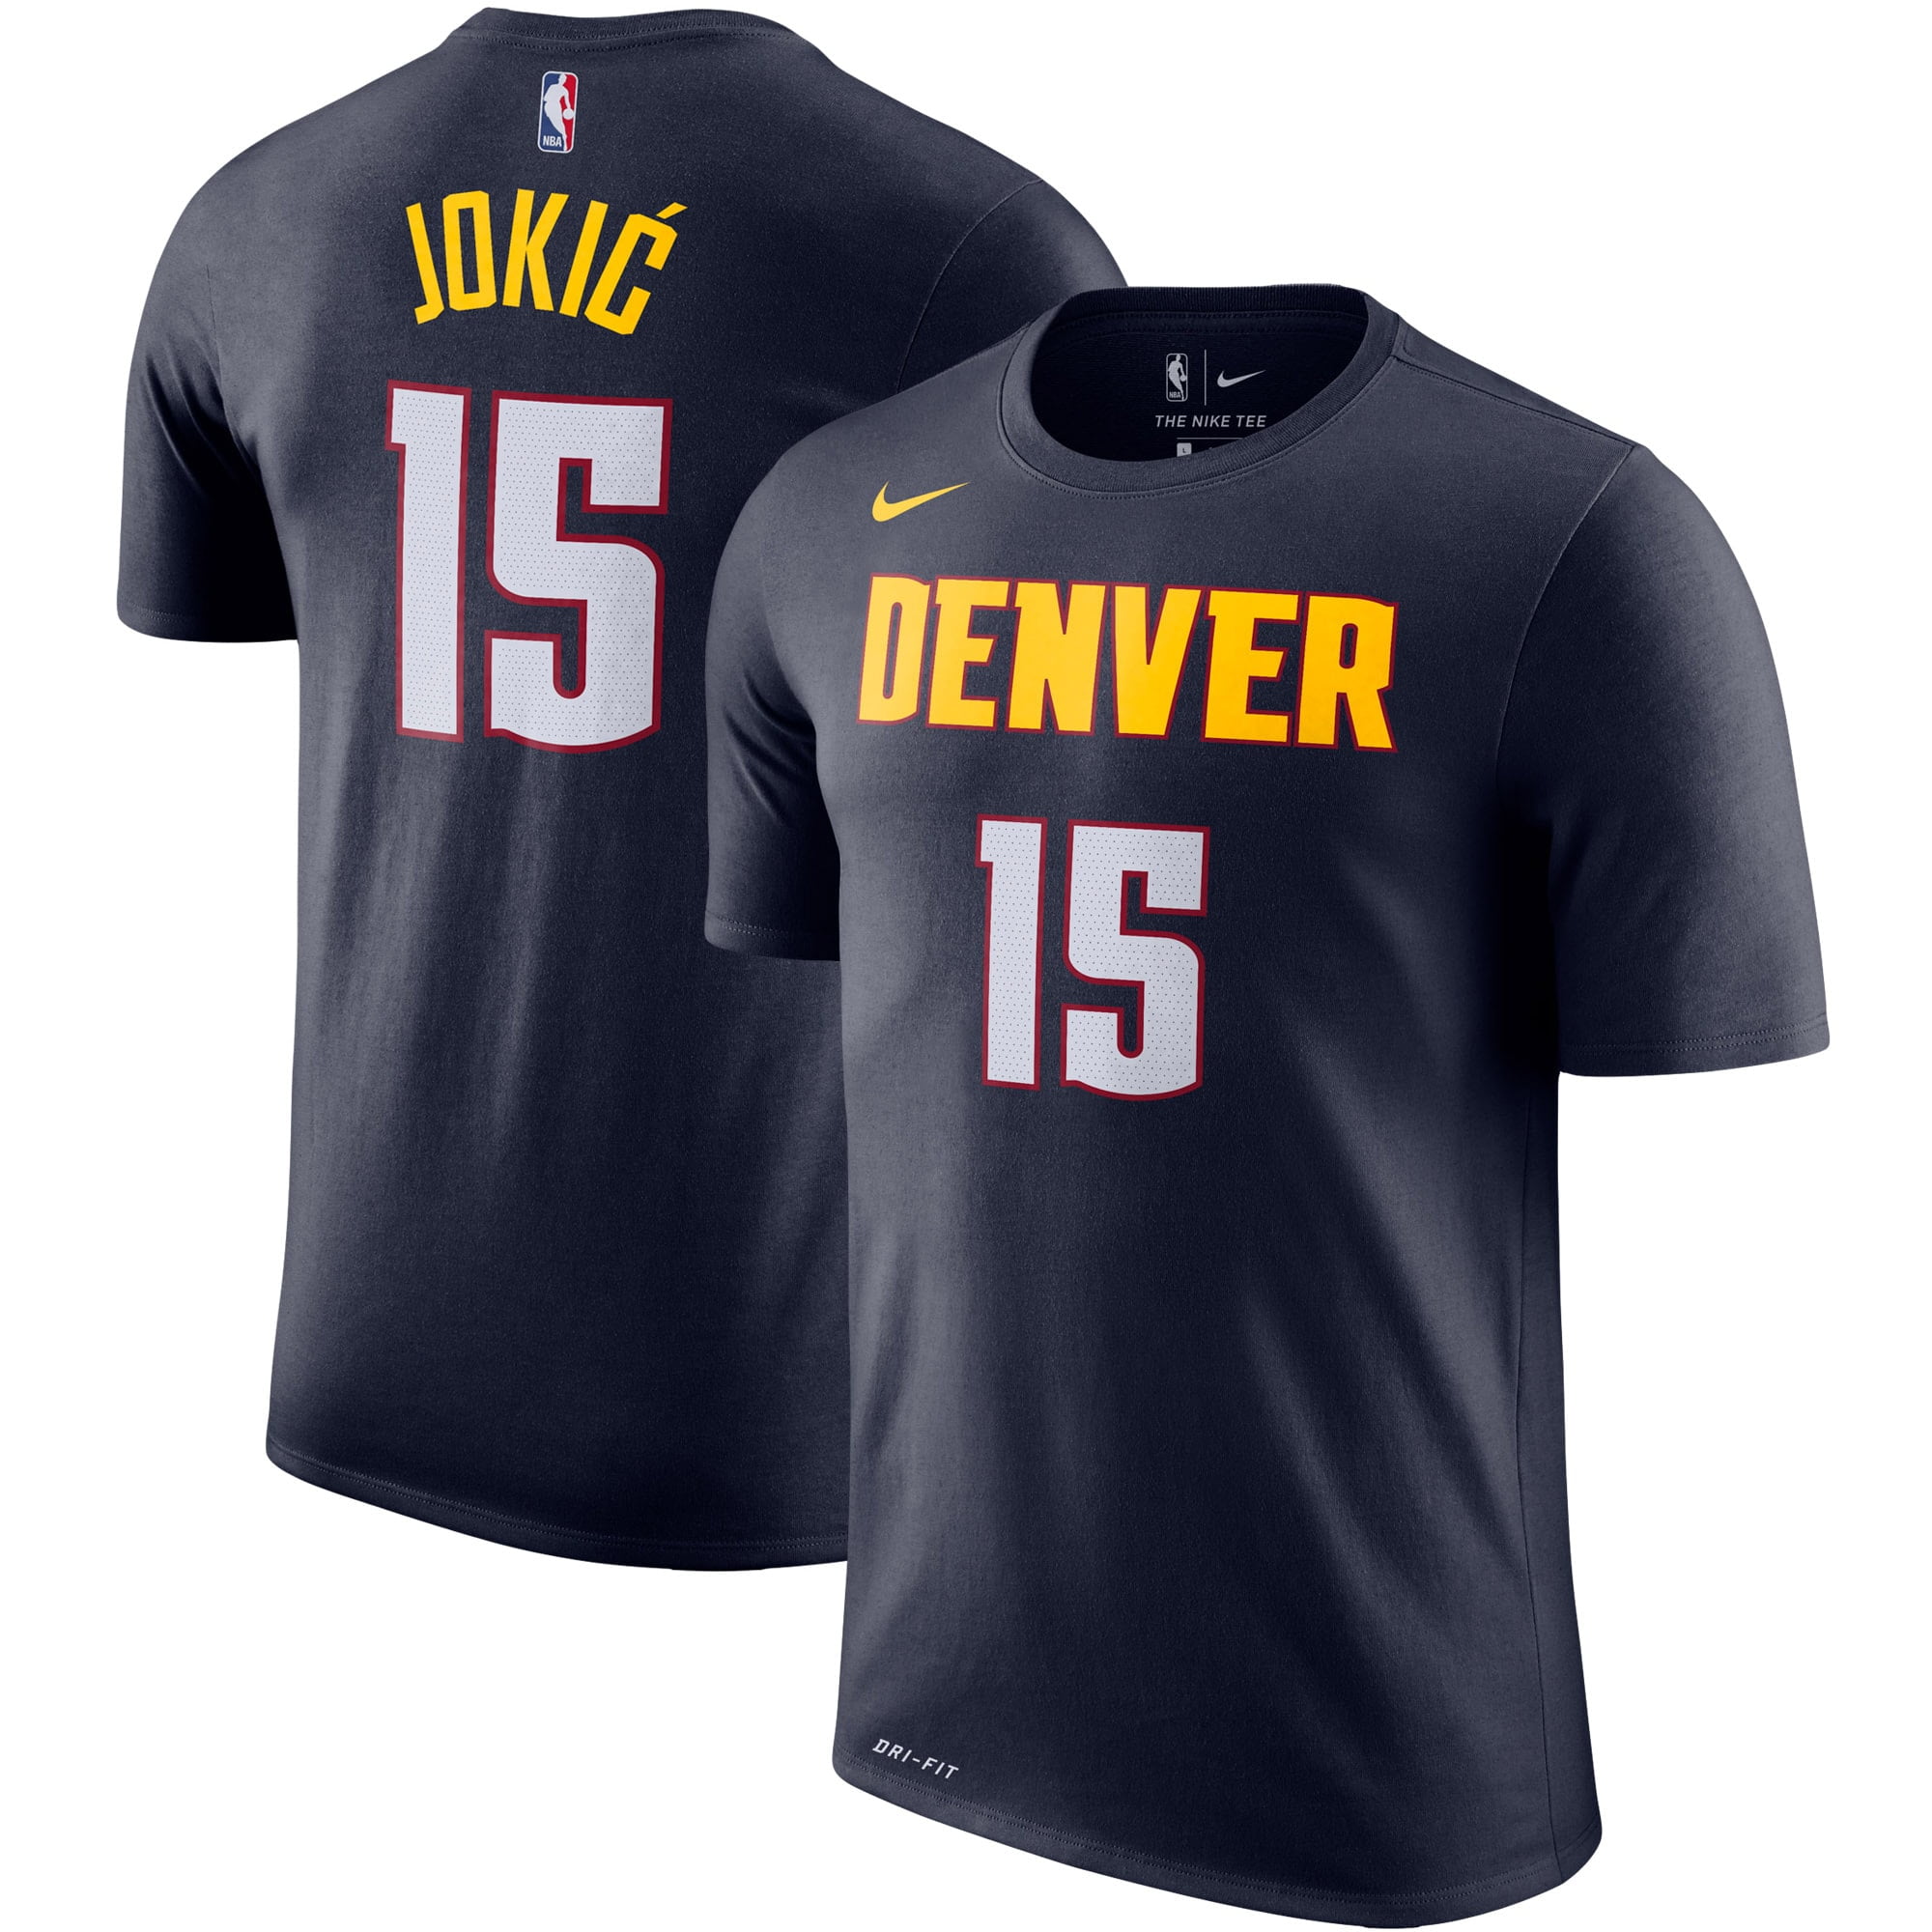 Nikola Jokic Denver Nuggets Nike Player 